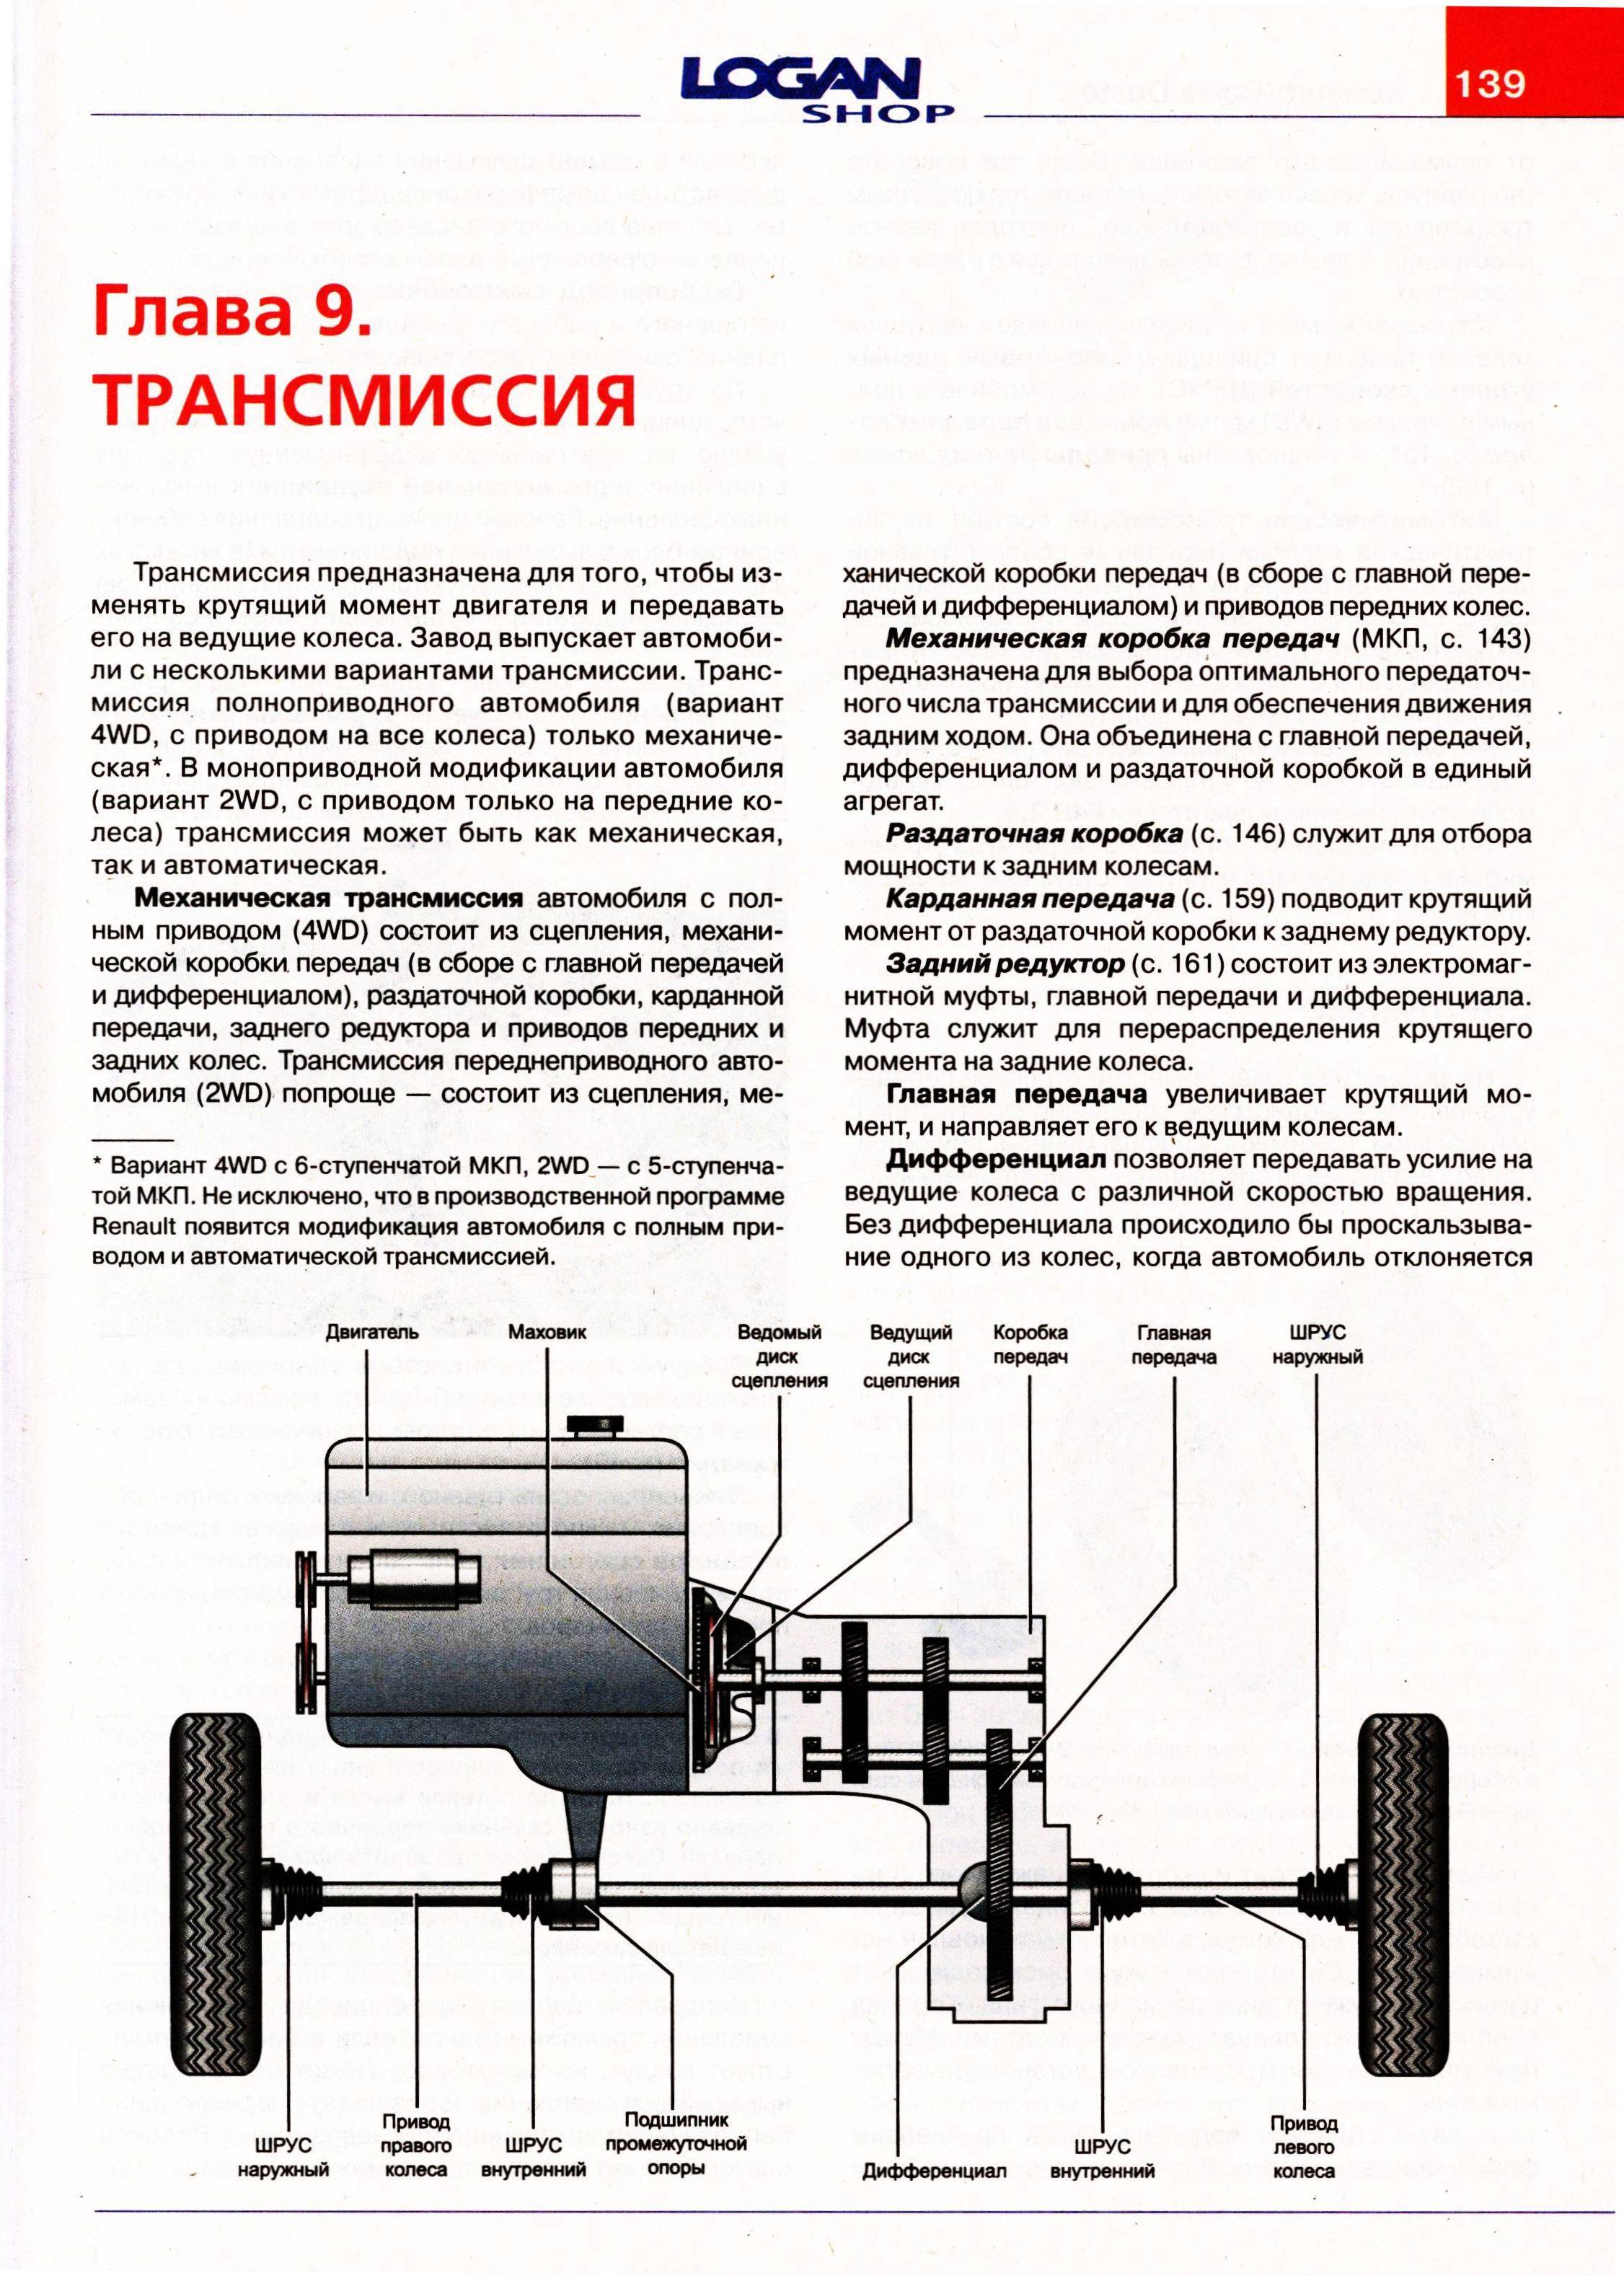 Как работает система полного привода рено дастер 2 | prorenault2.ru